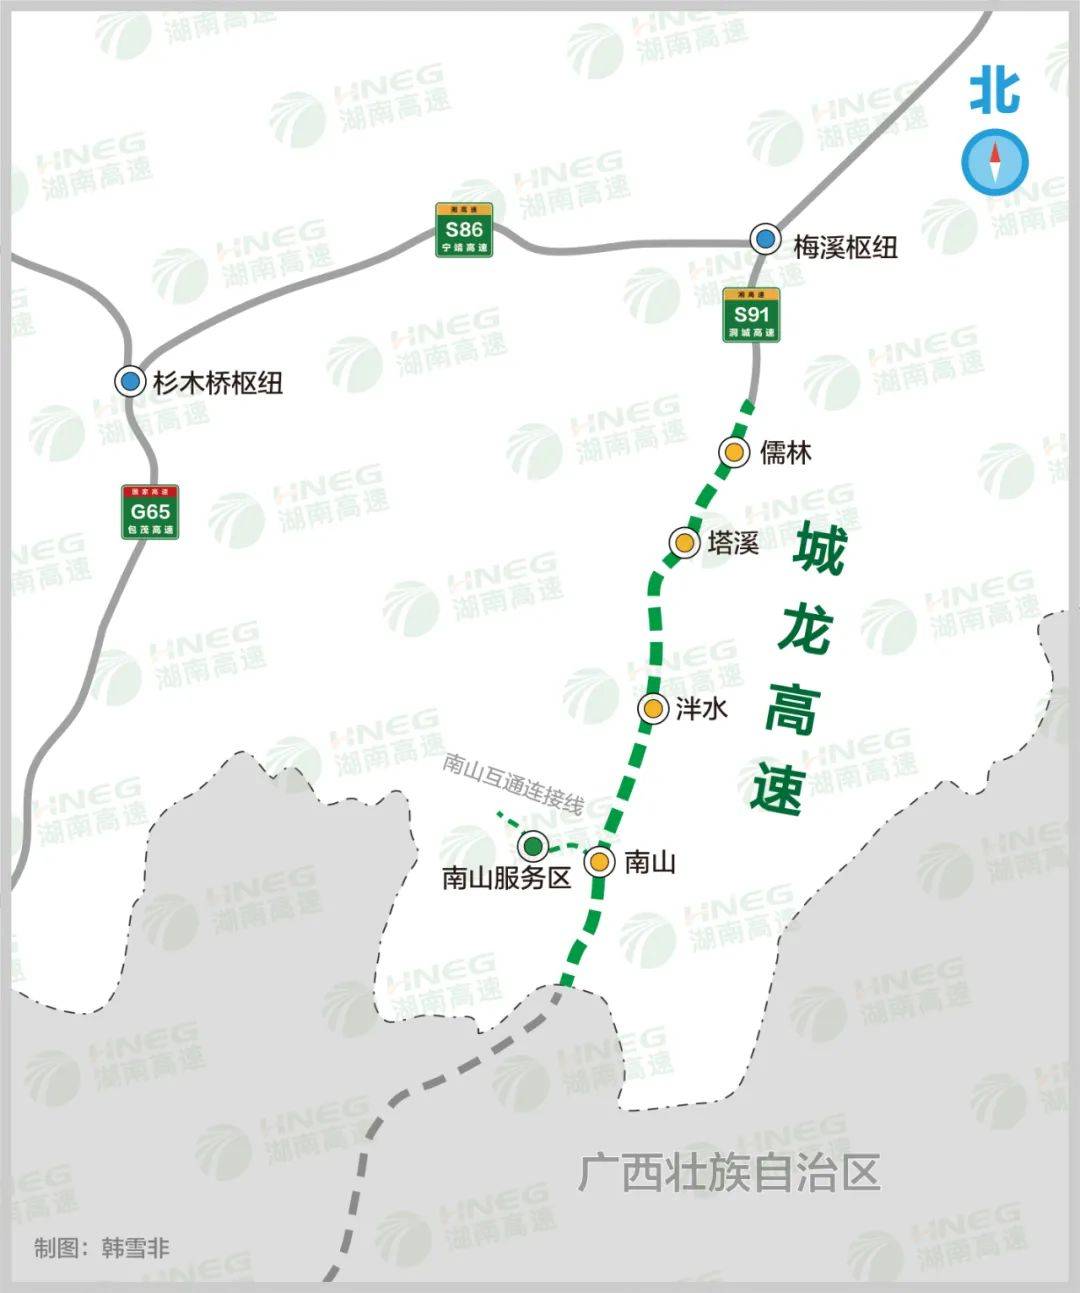 湖南城步至广西龙胜高速公路起于城步儒林,顺接已建的武冈至靖州高速